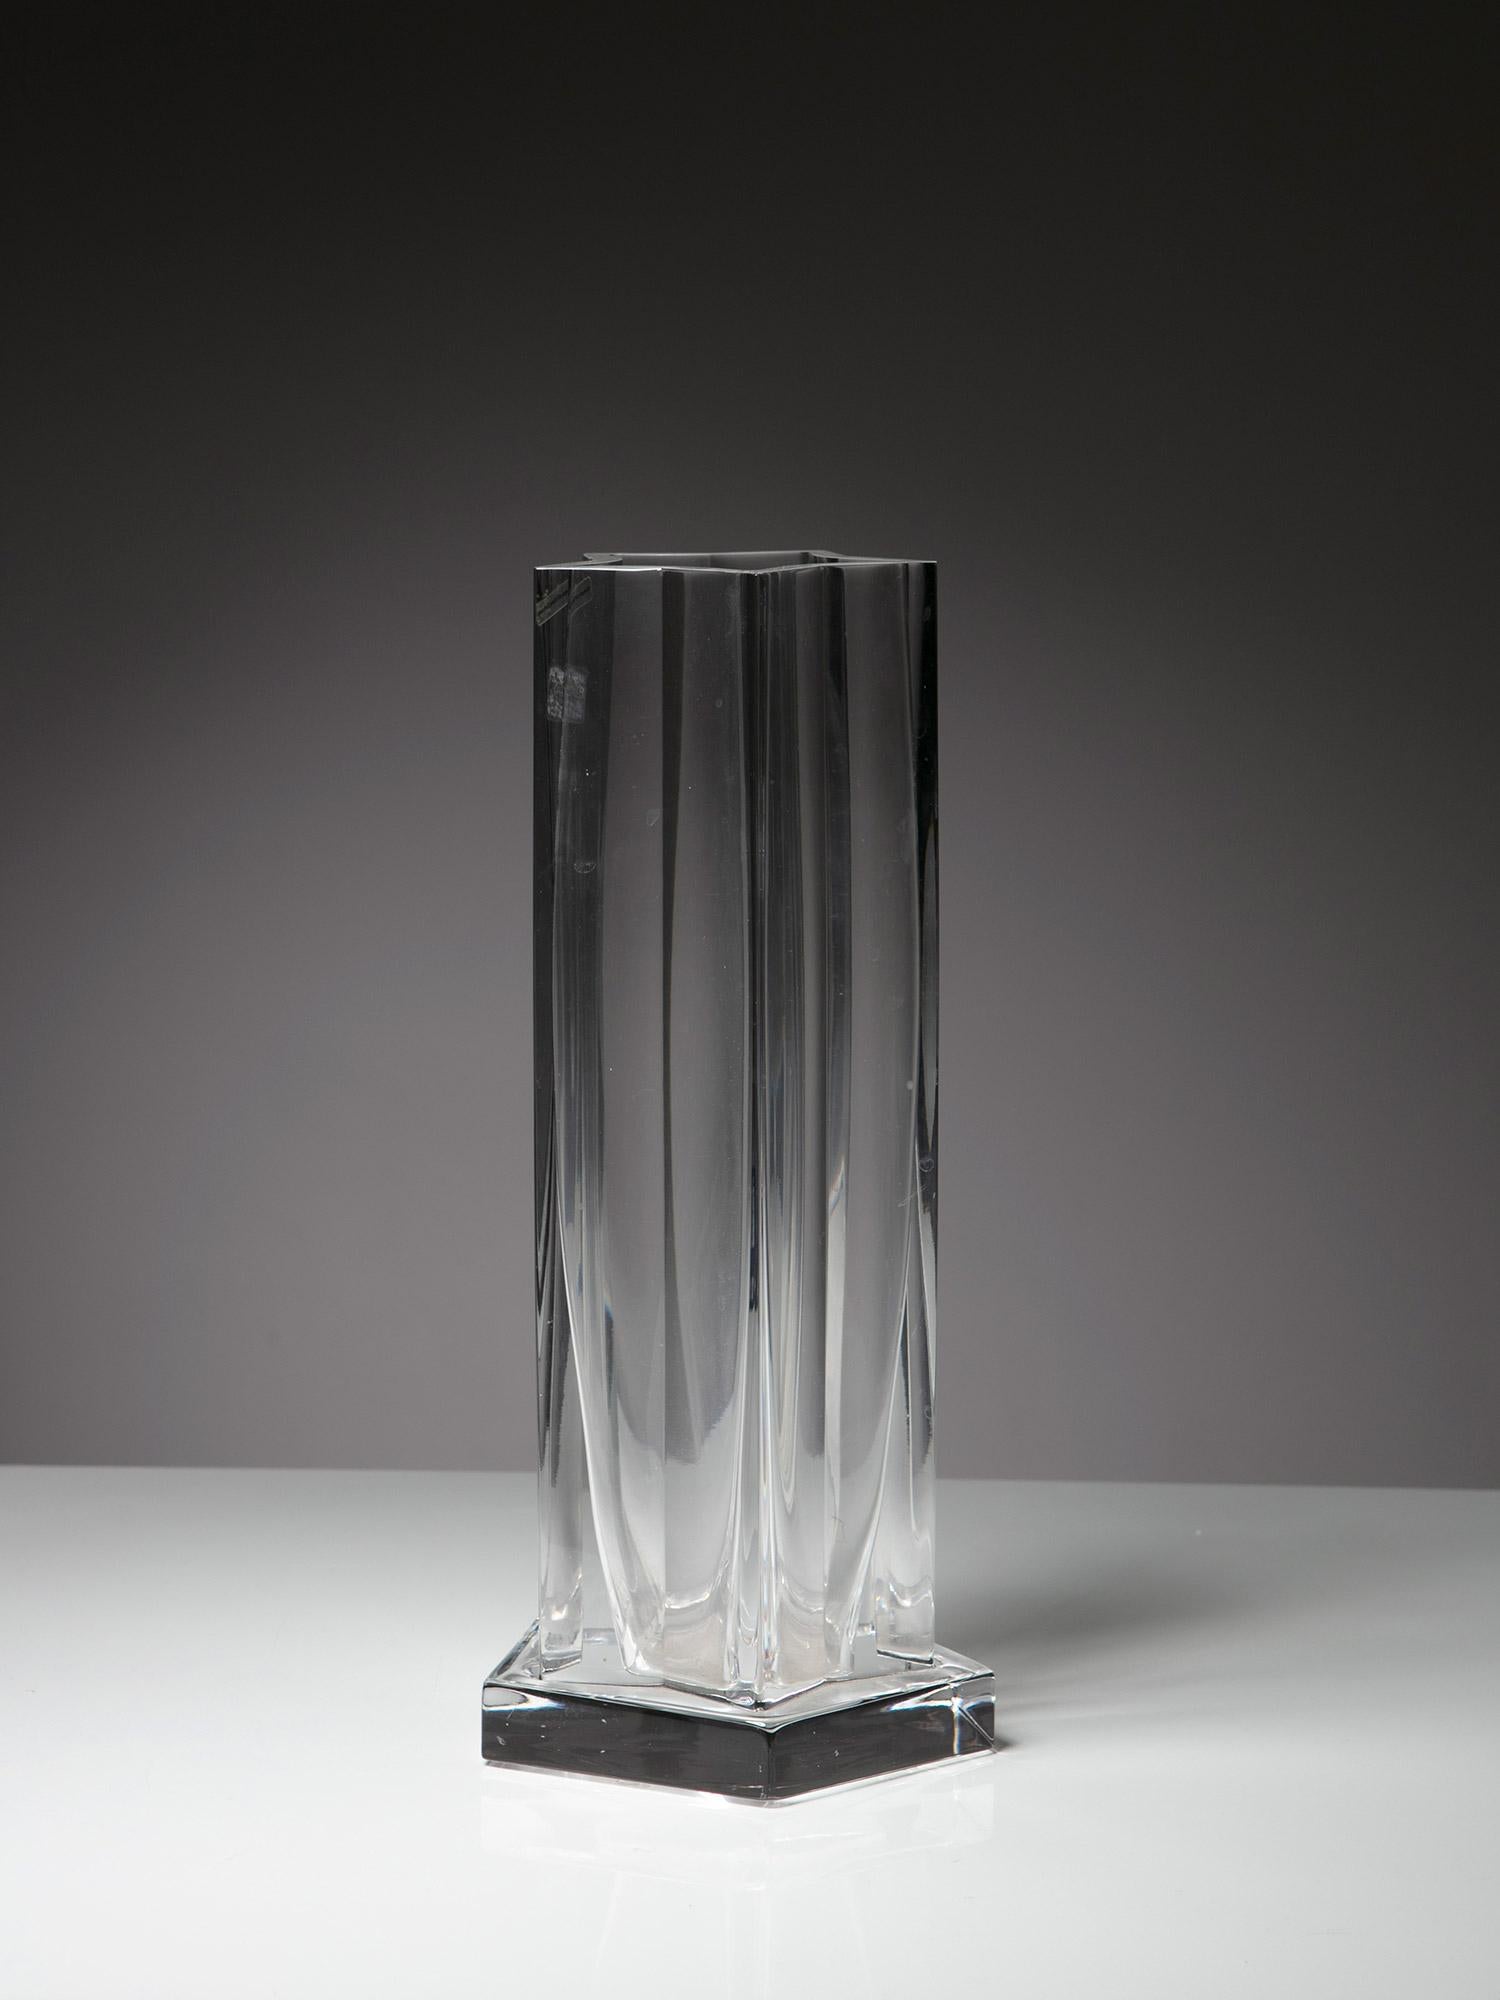 Grand vase en cristal en forme d'étoile par Ettore Sottsass pour Arnolfo di Cambio.
Pièce jamais utilisée avec les autocollants d'origine 
